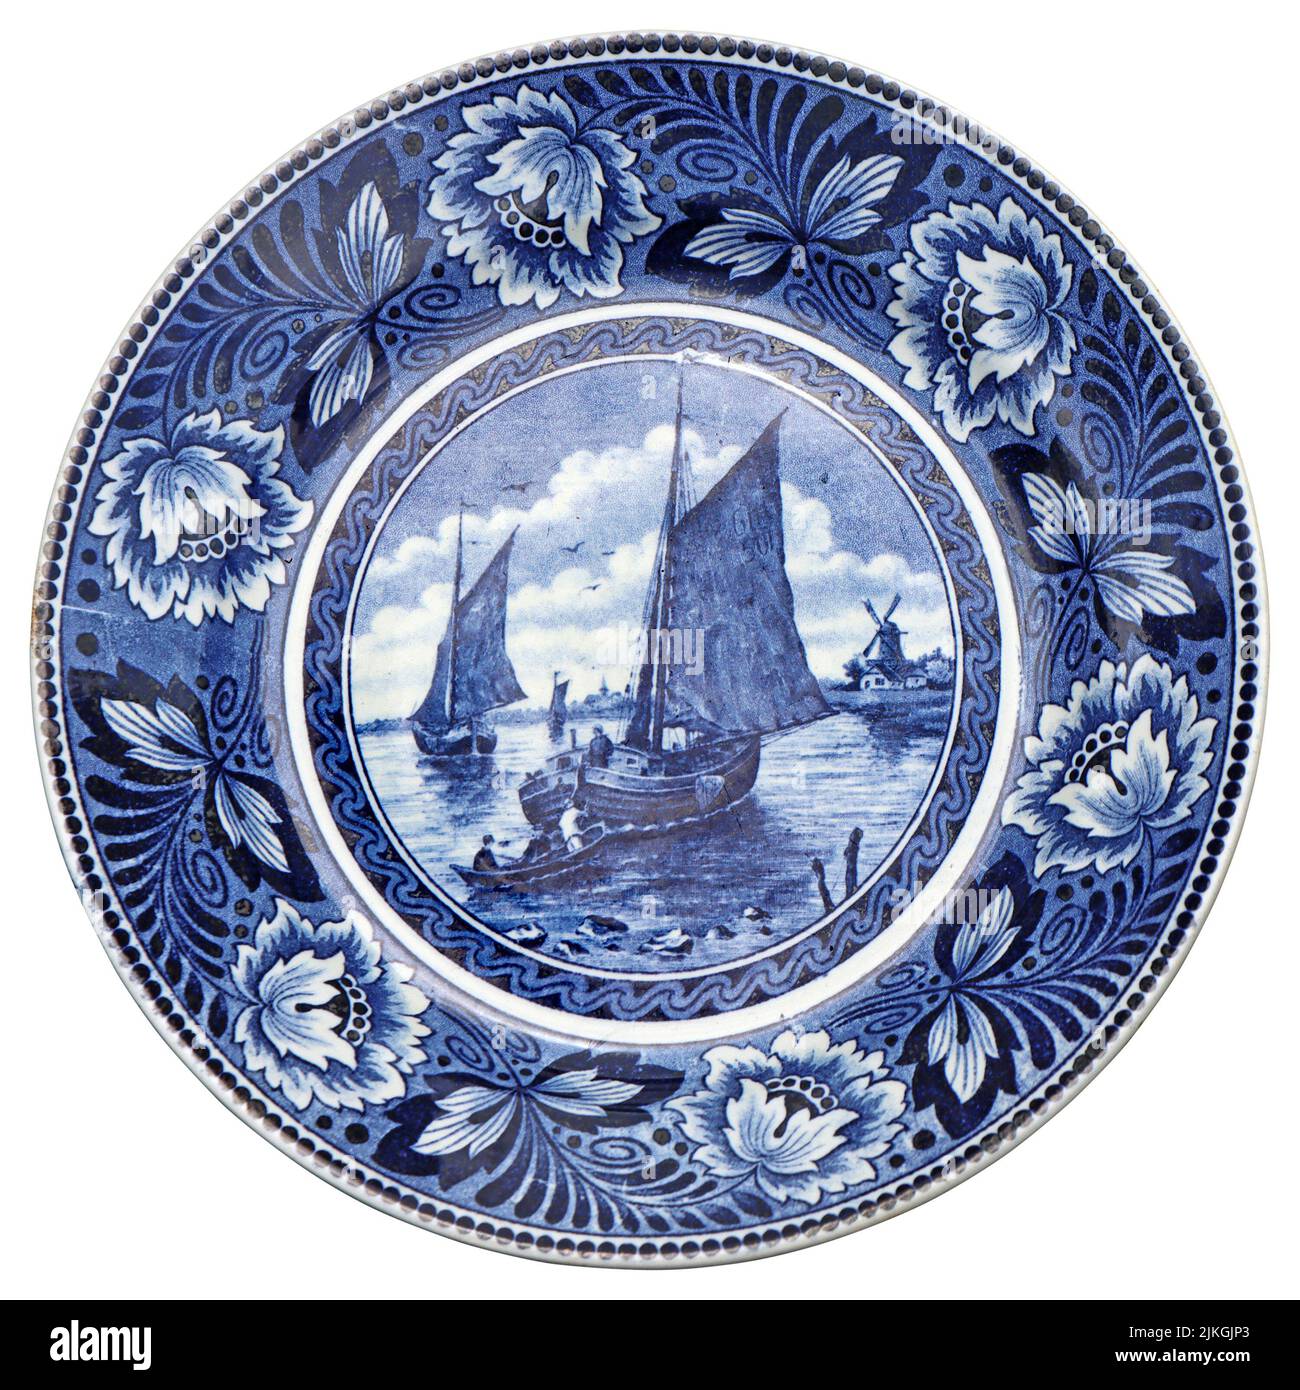 Plato de cerámica azul y blanca con motivos holandeses como recuerdo Foto de stock